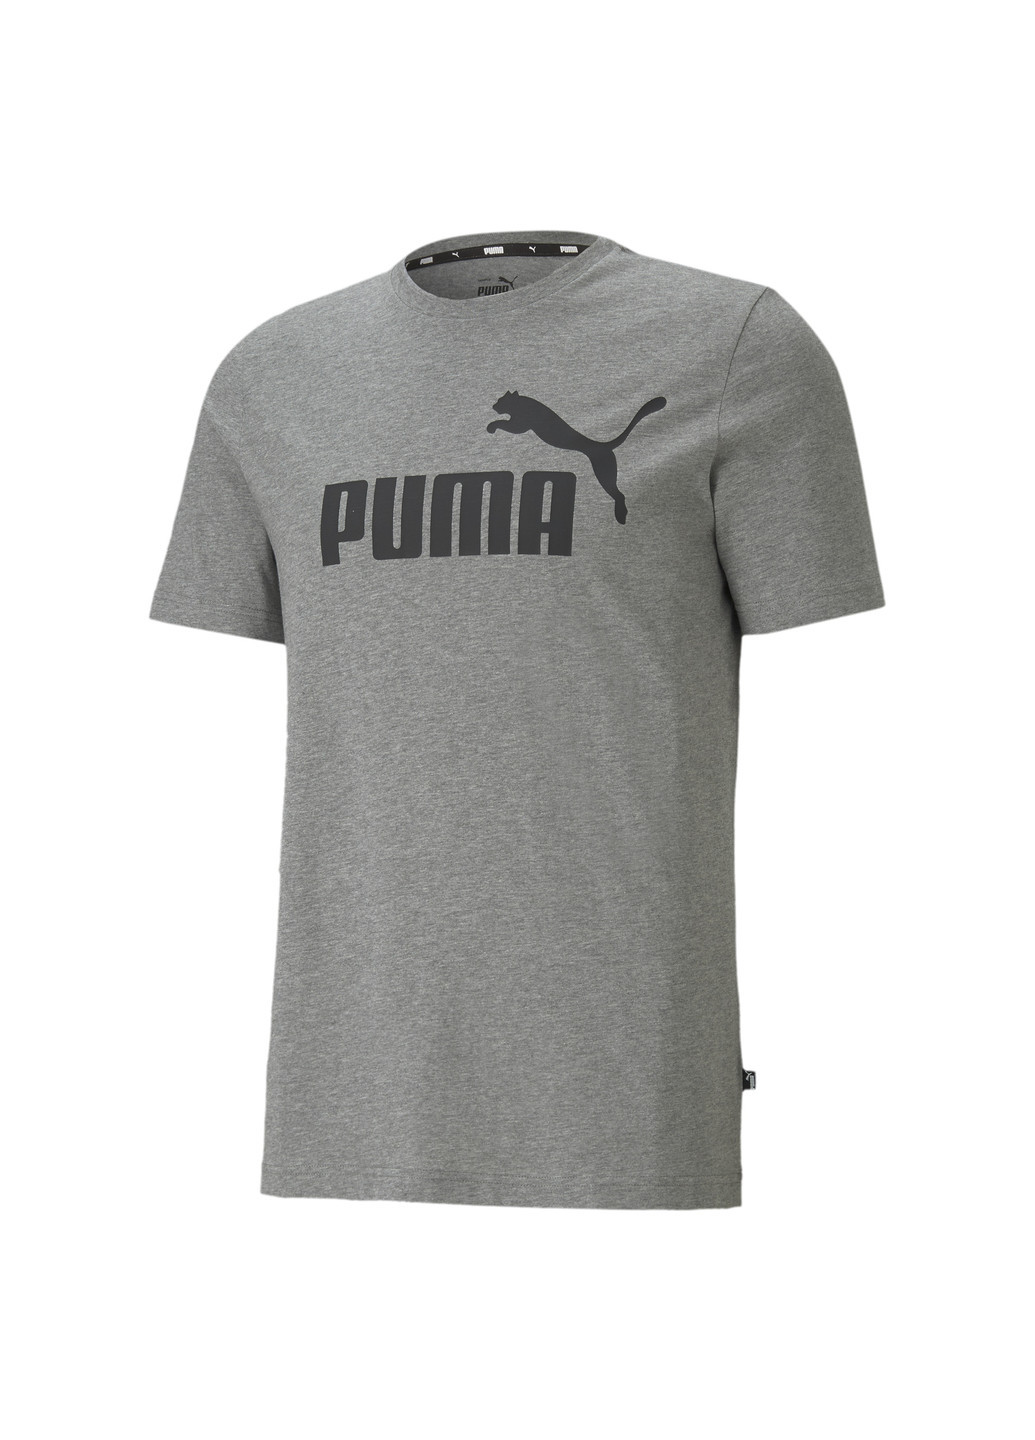 Серая футболка essentials logo men's tee Puma